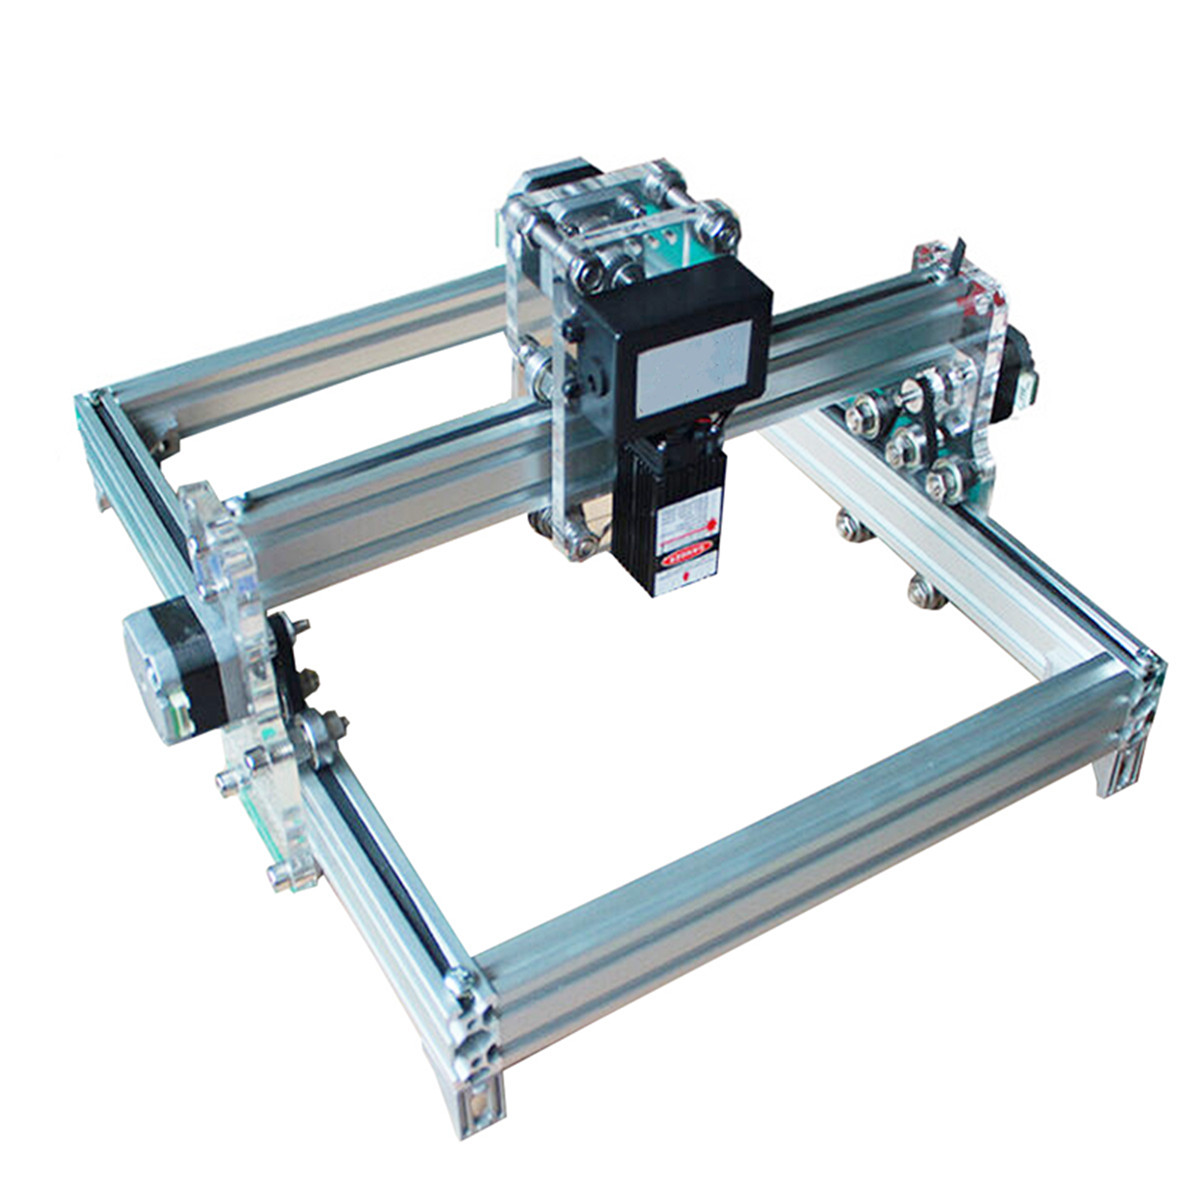 32cm*23 cm DIY 500mW Laser Engraving Machine Laser Engraver Printer Carving Desktop CNC Kit 12